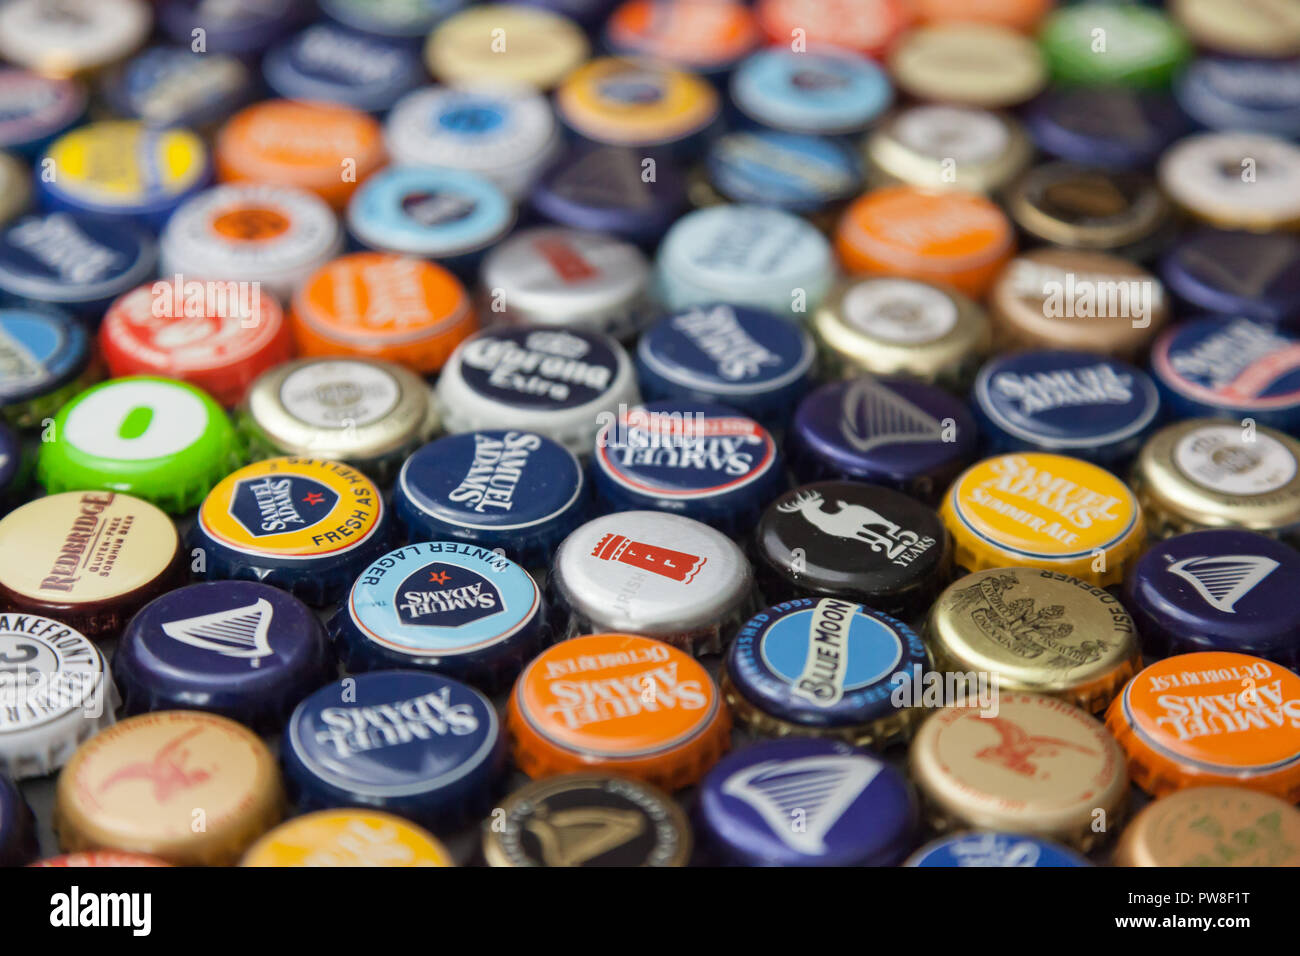 WOODBRIDGE, NEW JERSEY - 13 octobre 2018 : une collection de capsules de bouteilles de bière de couleur de différentes marques est vu Banque D'Images